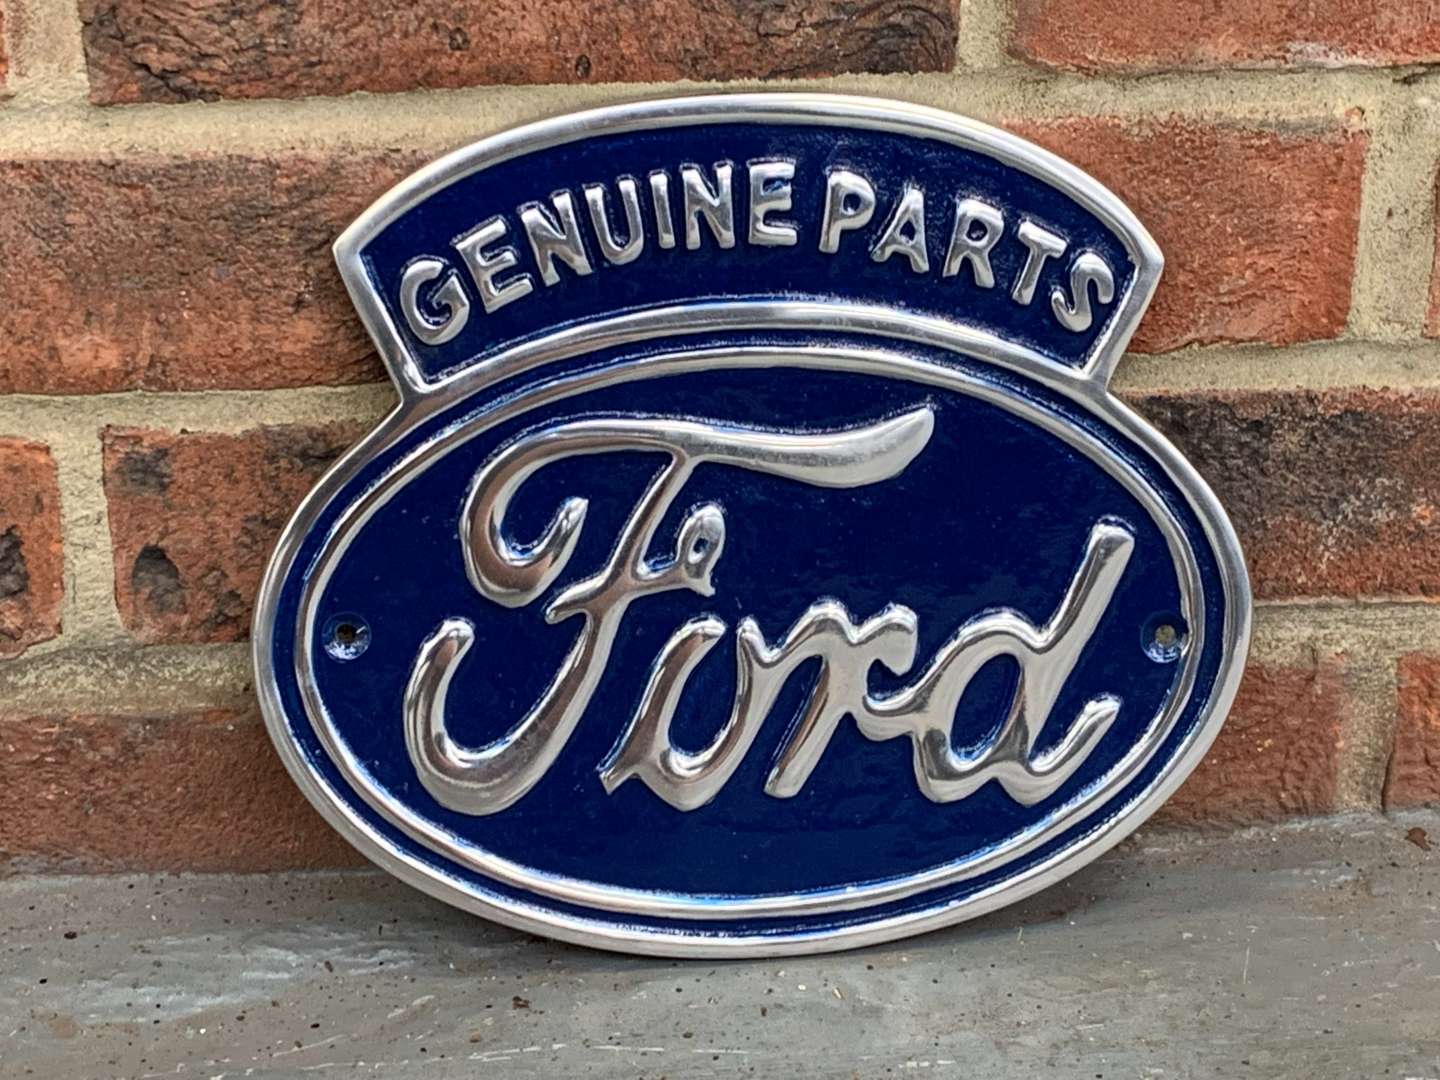 <p>Genuine Ford Parts Aluminium Sign</p>